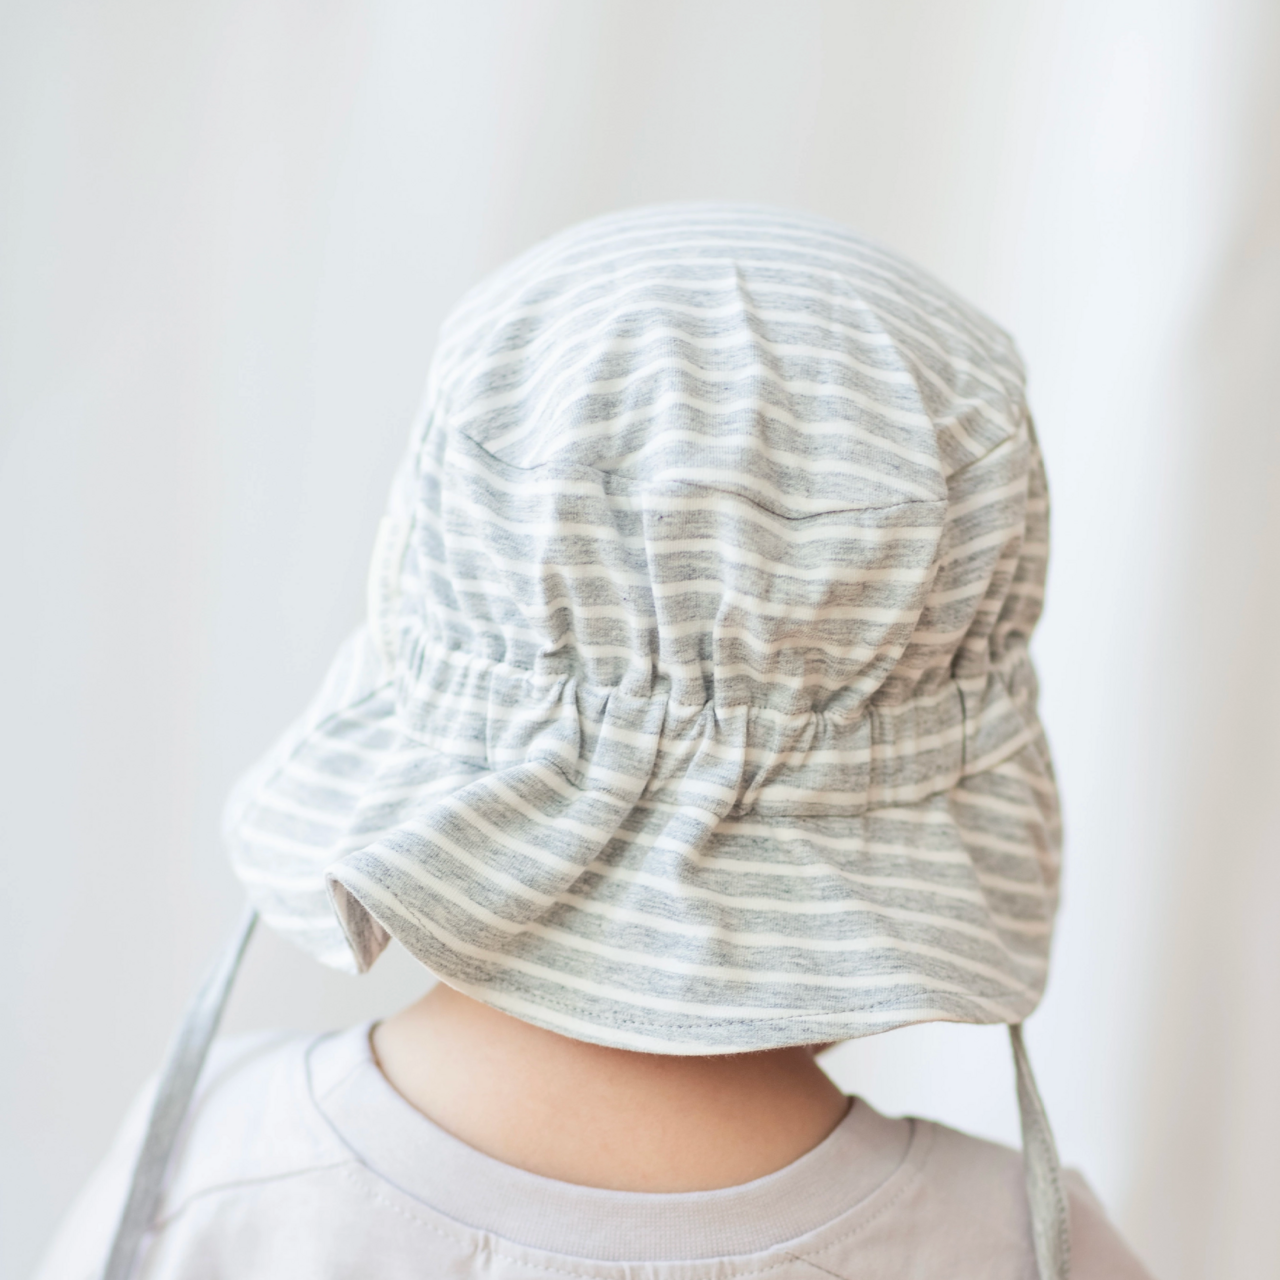 UV Sunny hat Classic Grey mel/white 2-6Y